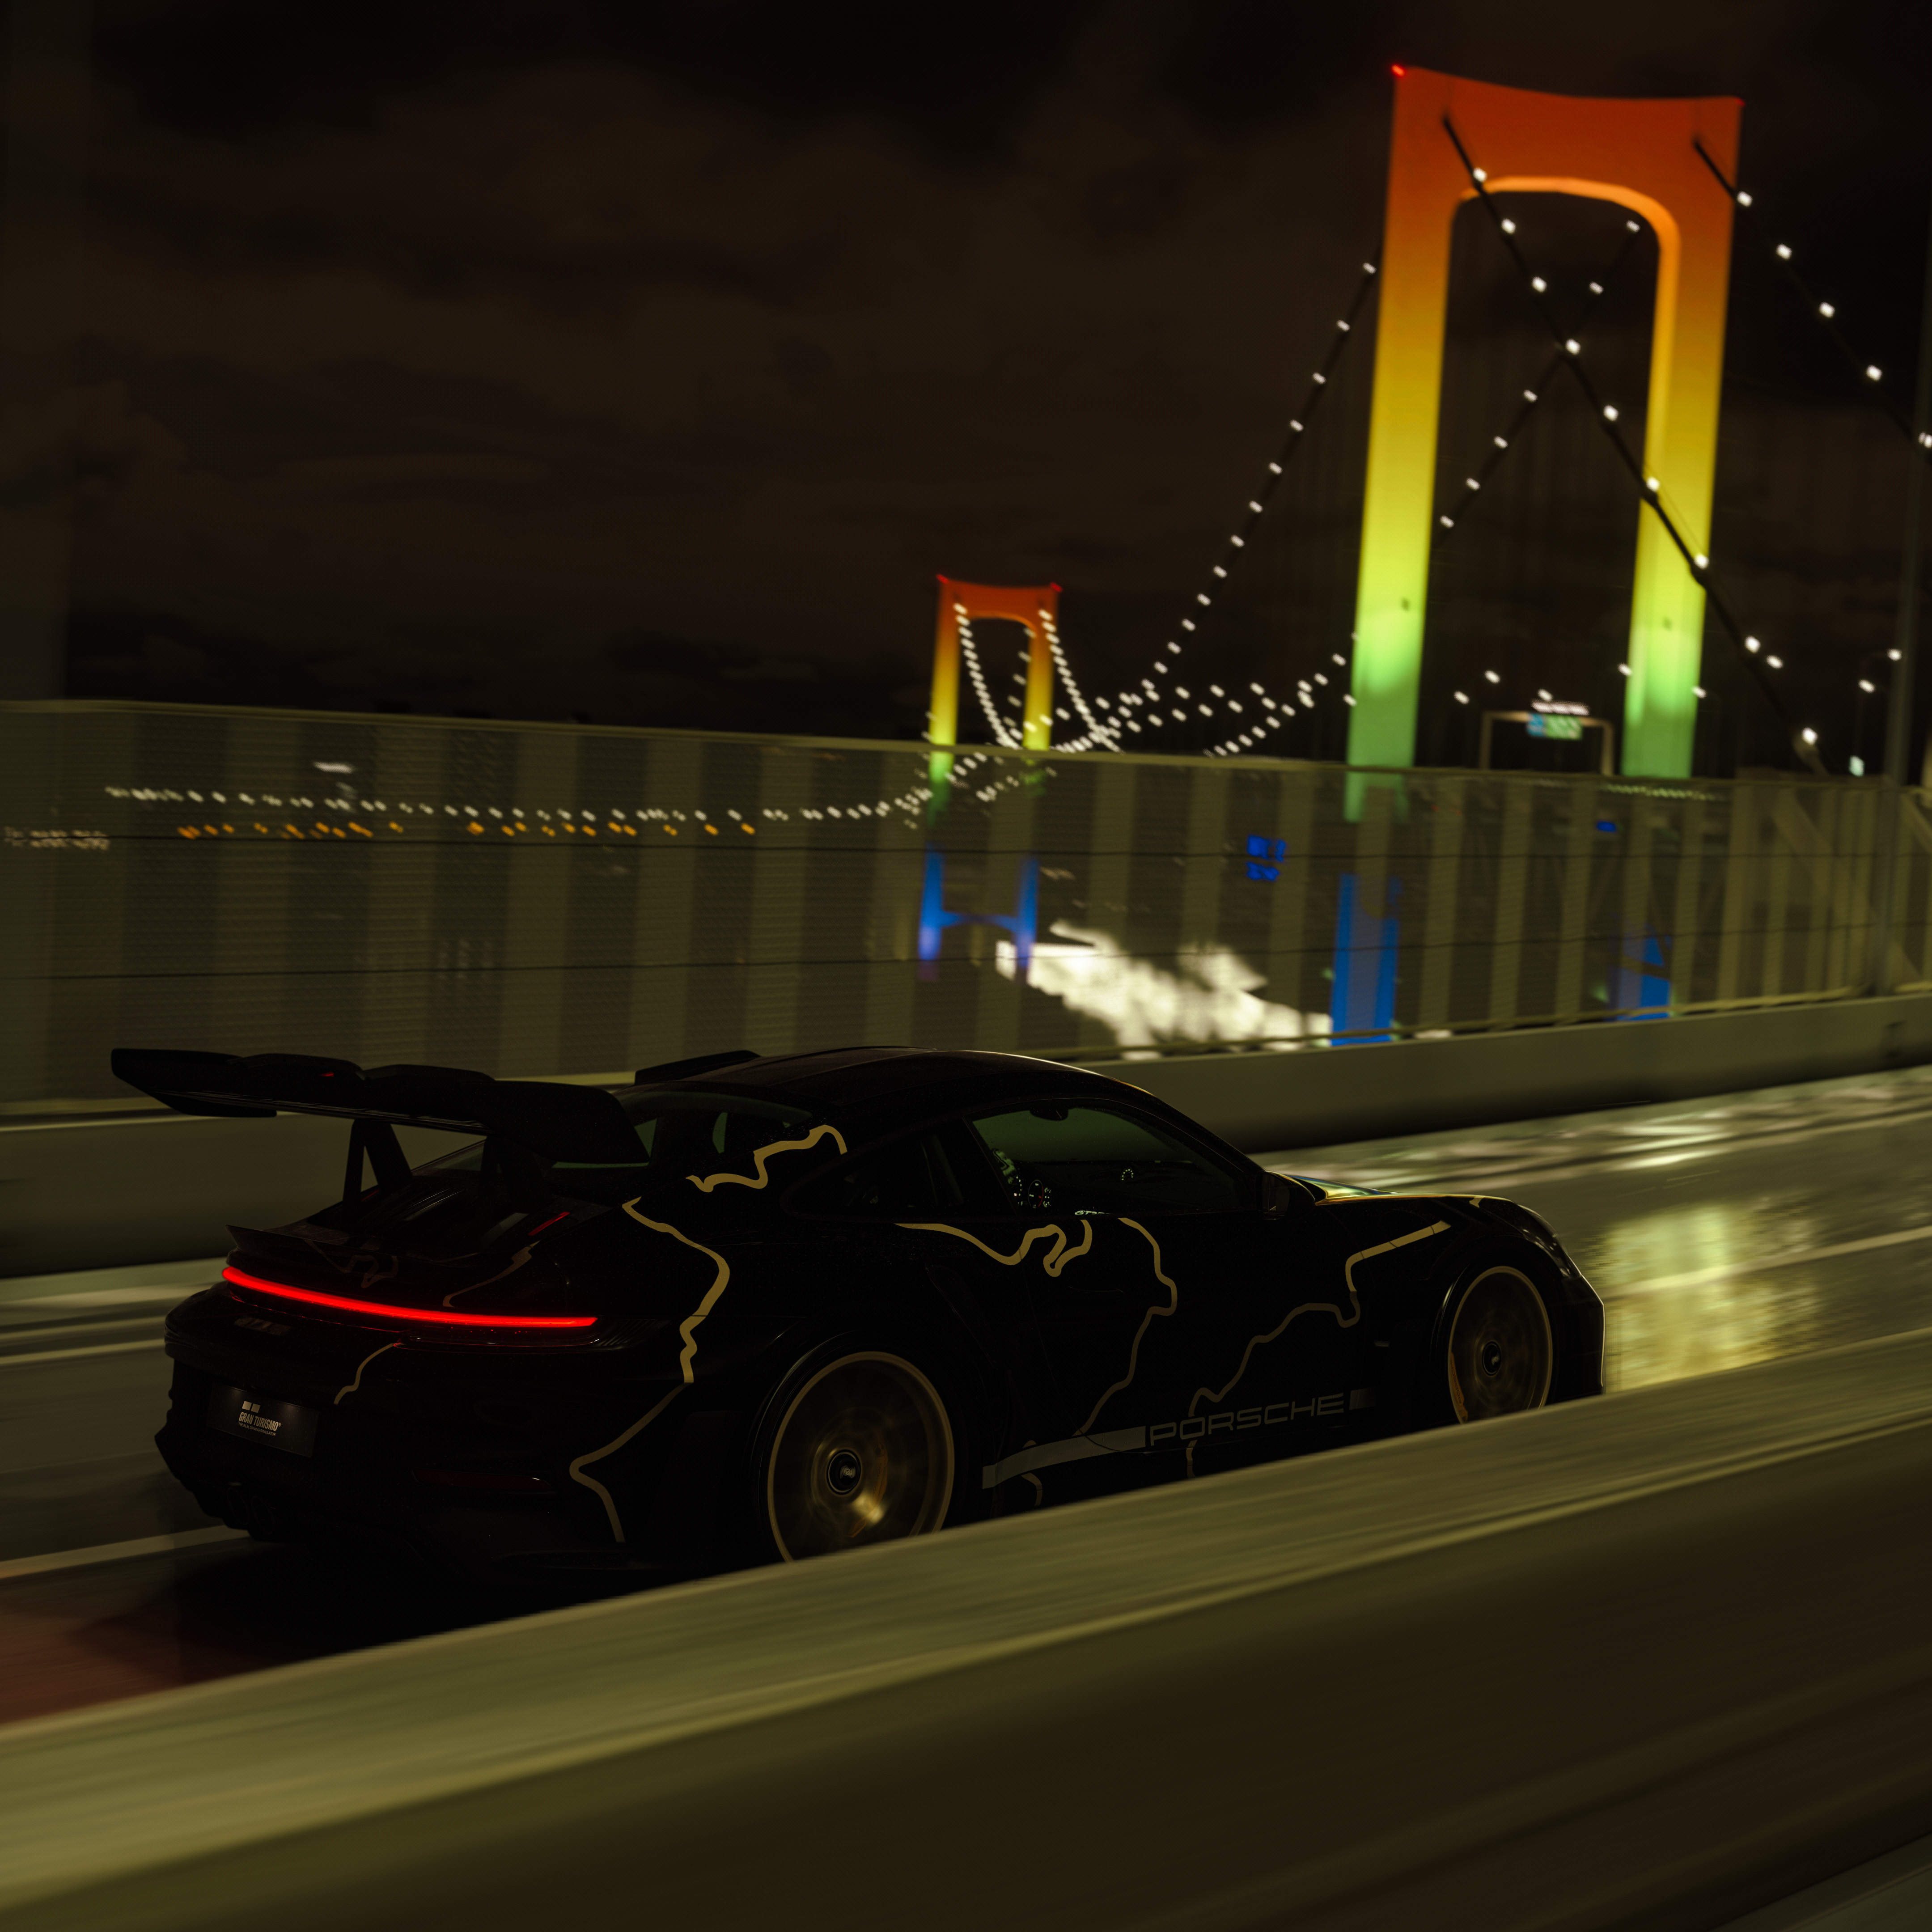 Porsche 911 Tokyo Bridge Car Assetto Corsa PC Gaming 4320x4320